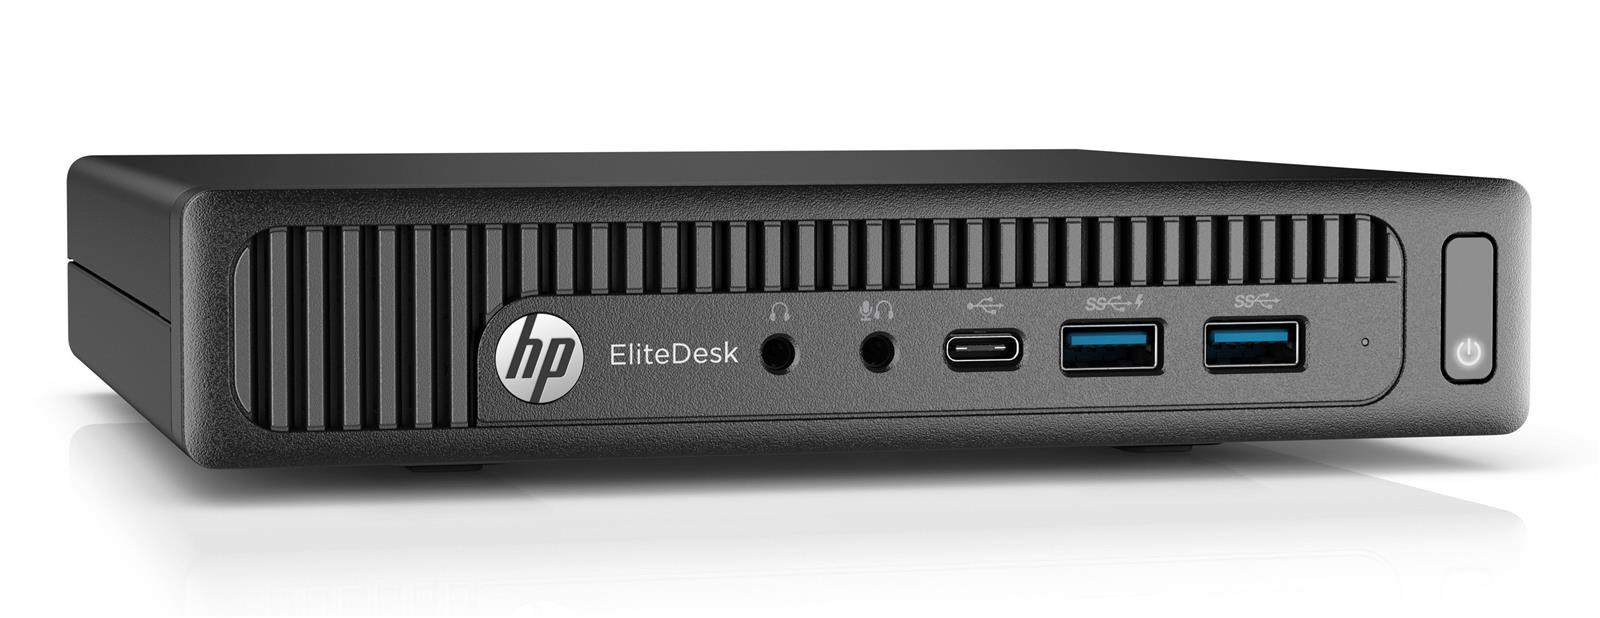 HP EliteDesk 800 G2 USFF Tiny Core i5-6500T 2,50GHz 4GB RAM 256GB SSD Win 10 Pro Mini-PC